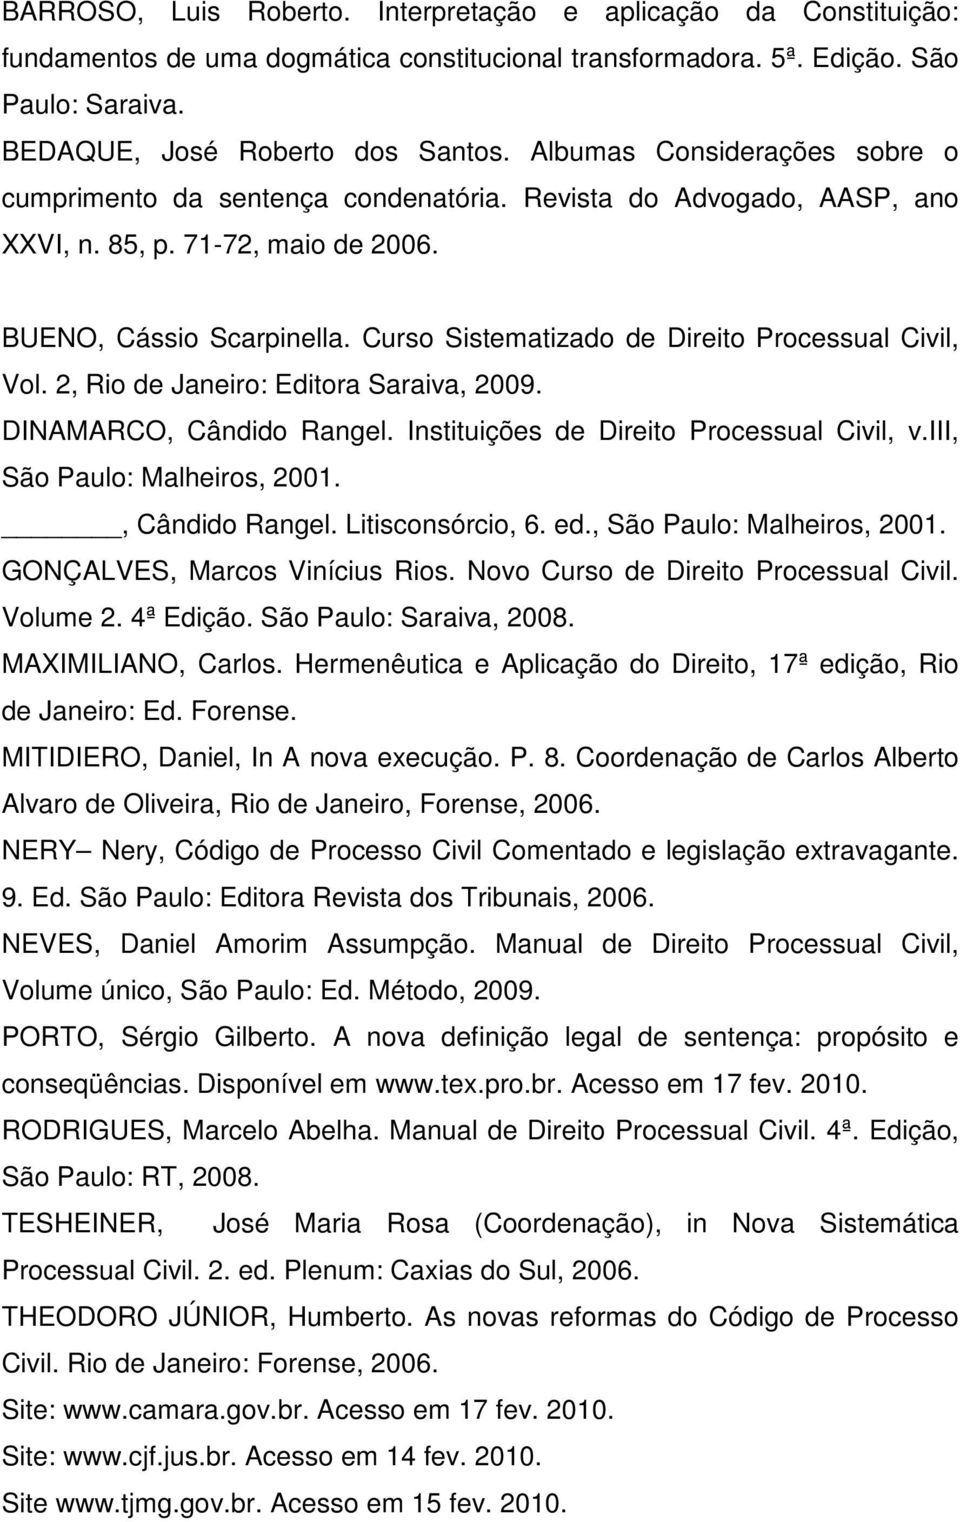 Curso Sistematizado de Direito Processual Civil, Vol. 2, Rio de Janeiro: Editora Saraiva, 2009. DINAMARCO, Cândido Rangel. Instituições de Direito Processual Civil, v.iii, São Paulo: Malheiros, 2001.